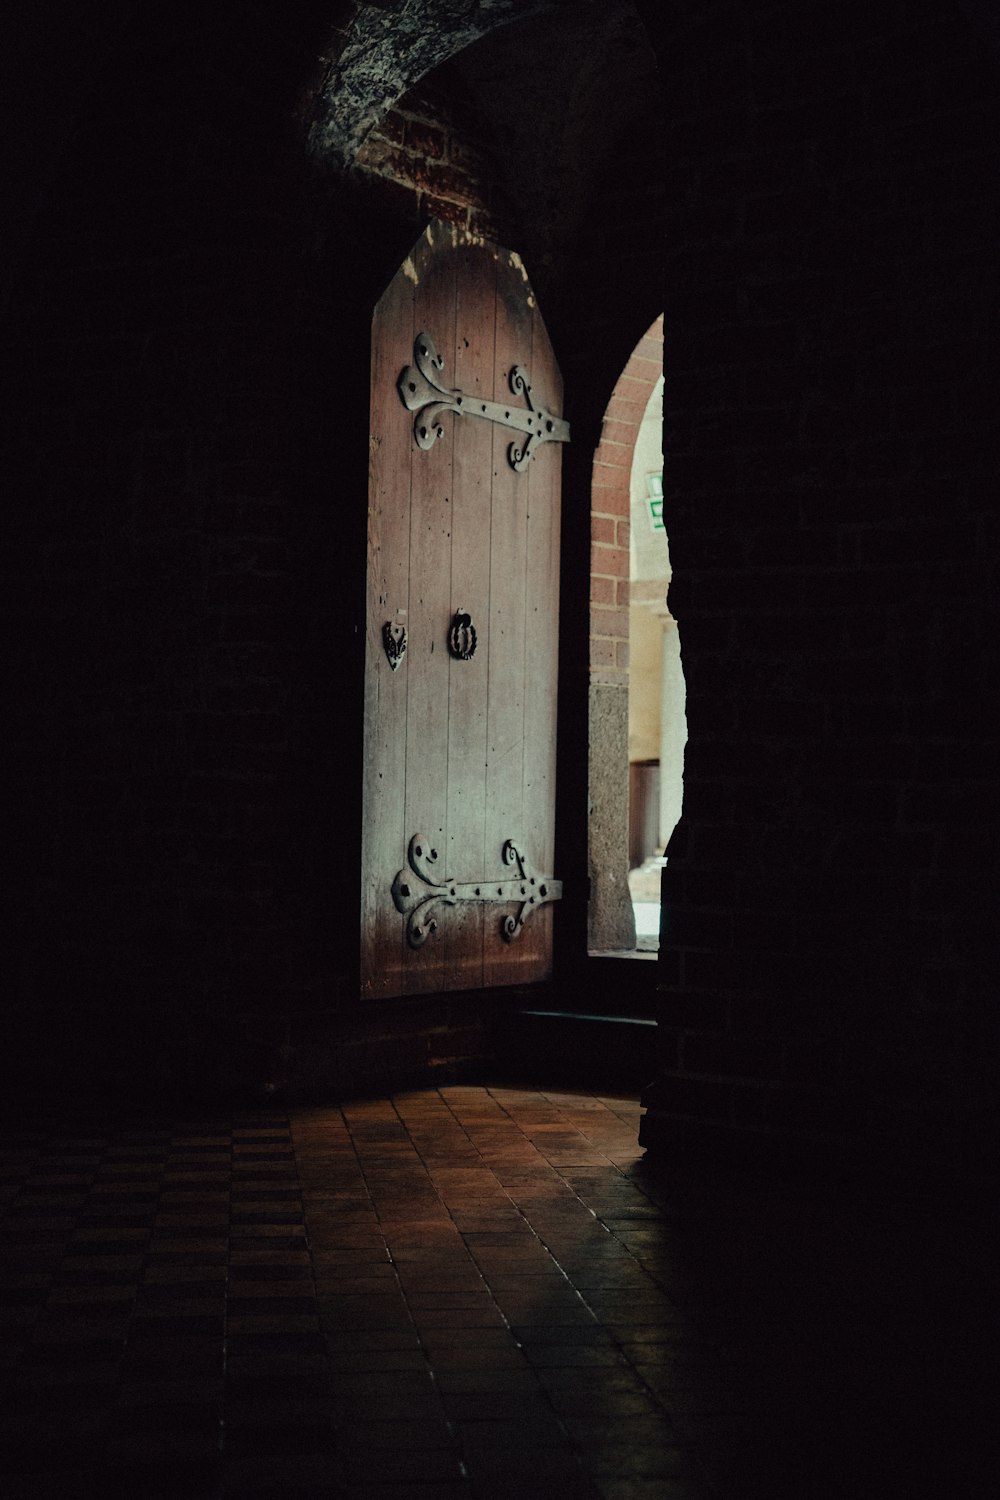 a wooden door in a dark room with a brick floor